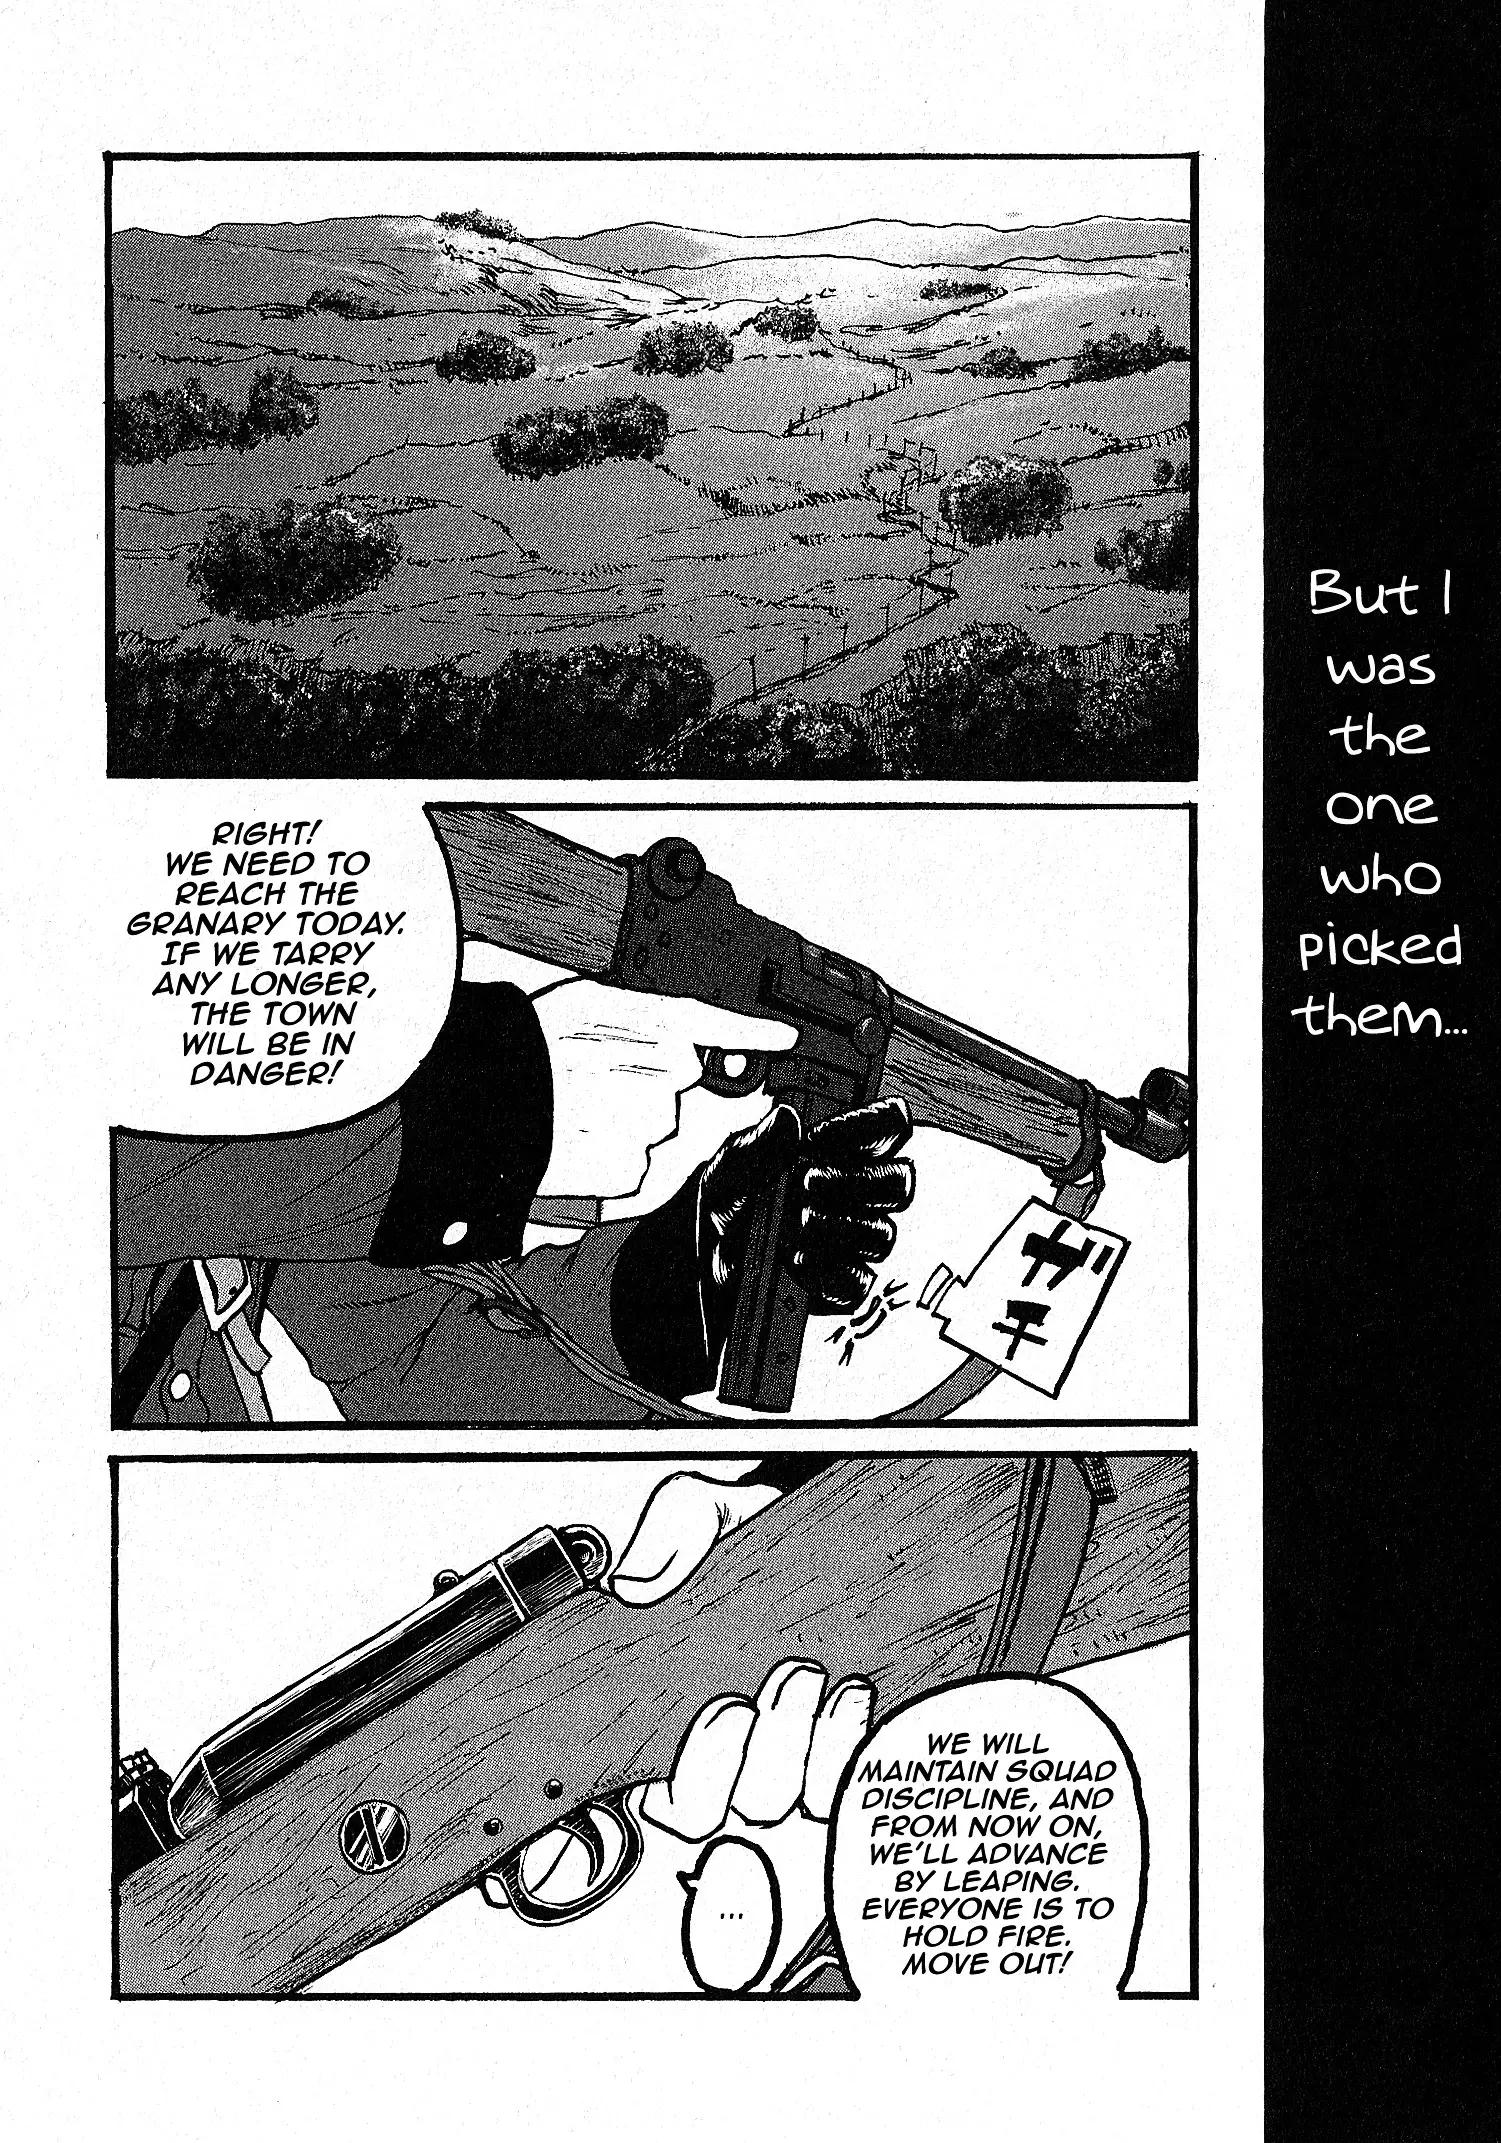 Groundless - Sekigan No Sogekihei - 6.11 page 22-11a32a45